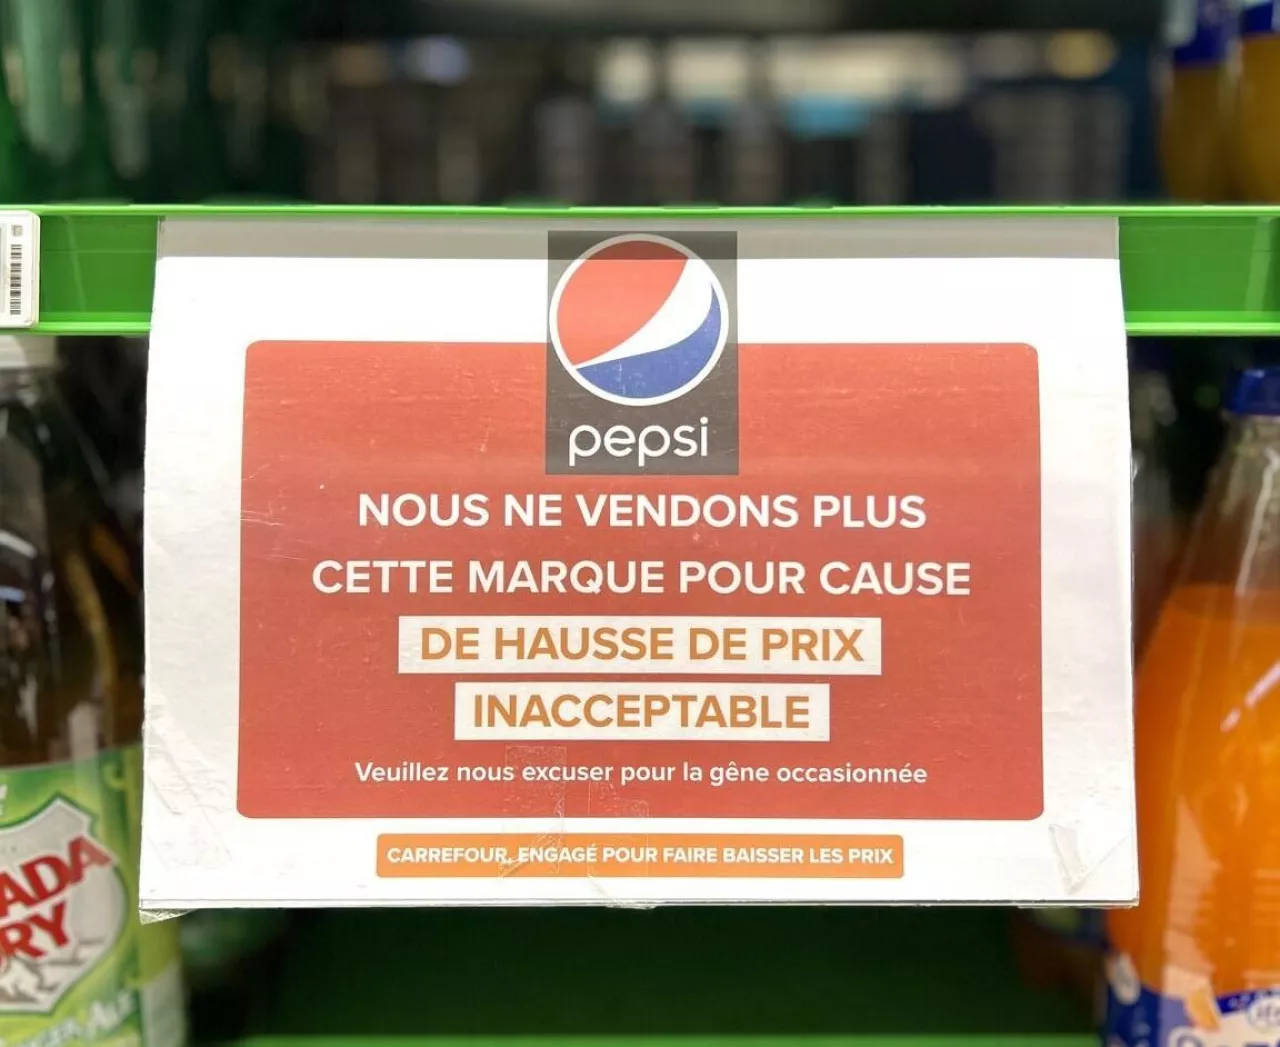 &lt;p&gt;Carrefour nie będzie sprzedawał produktów PepsiCo. Etykieta informuje klientów o wycofaniu produktu (fot. Carrefour)&lt;/p&gt;